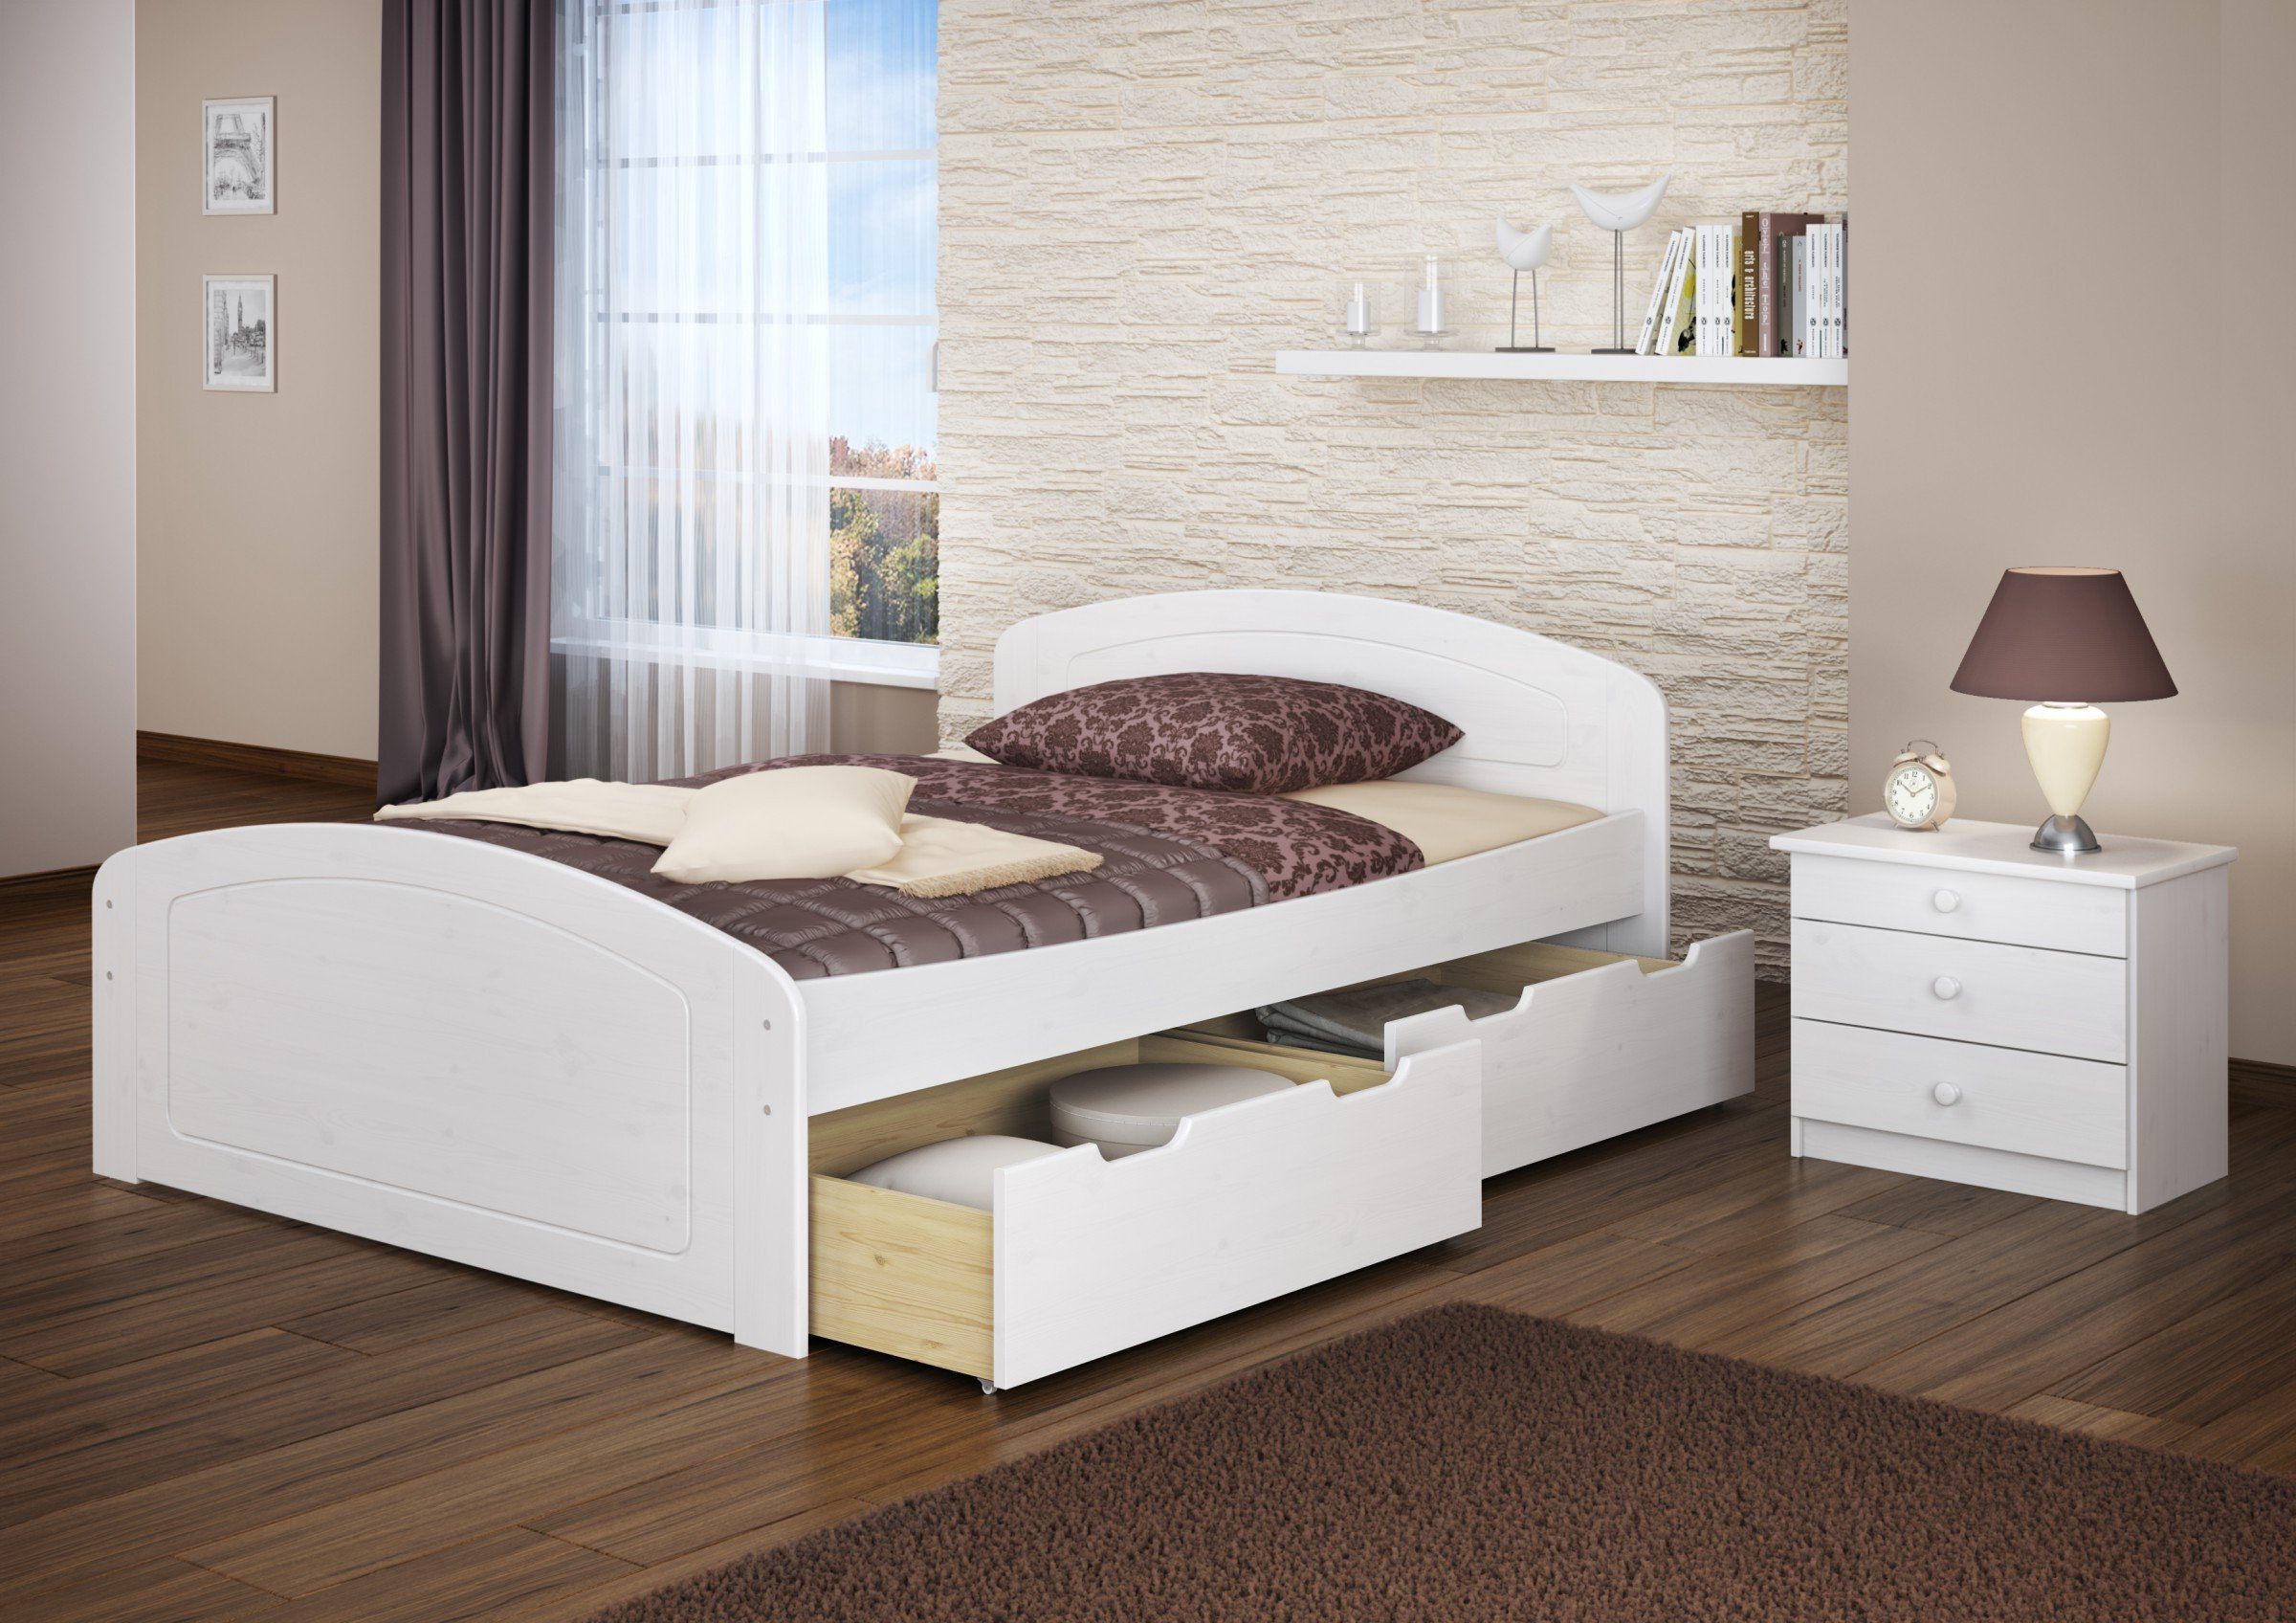 ERST-HOLZ Bett Doppelbett Kieferwaschweiß Matratze + Staukästen, weiß 3 + Kiefer Rost + 140x200